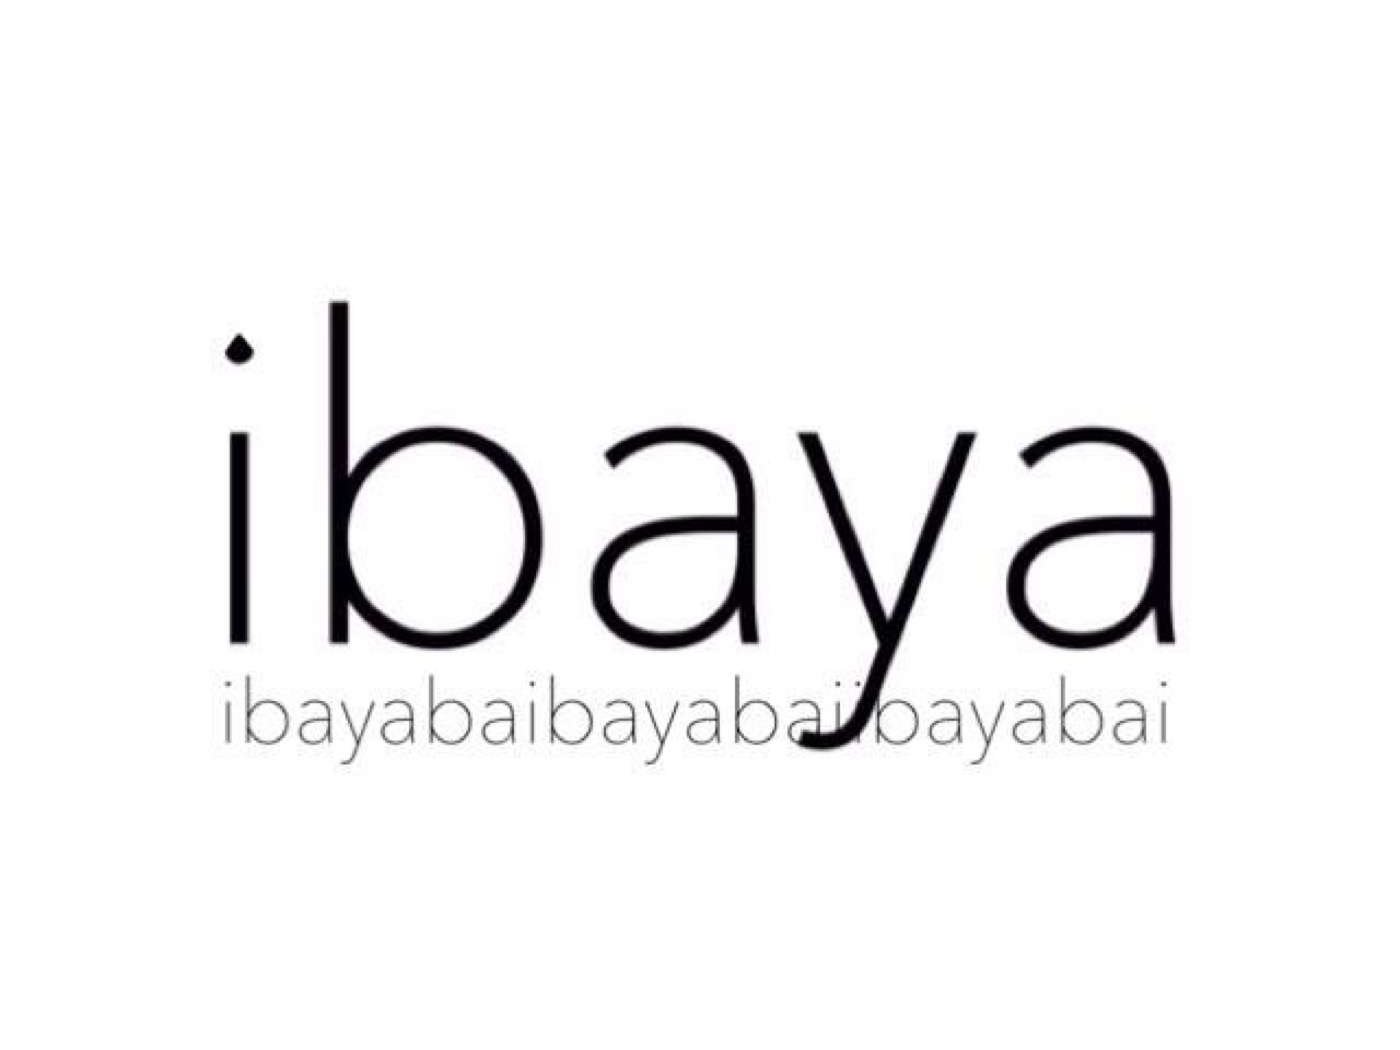 Ibaya